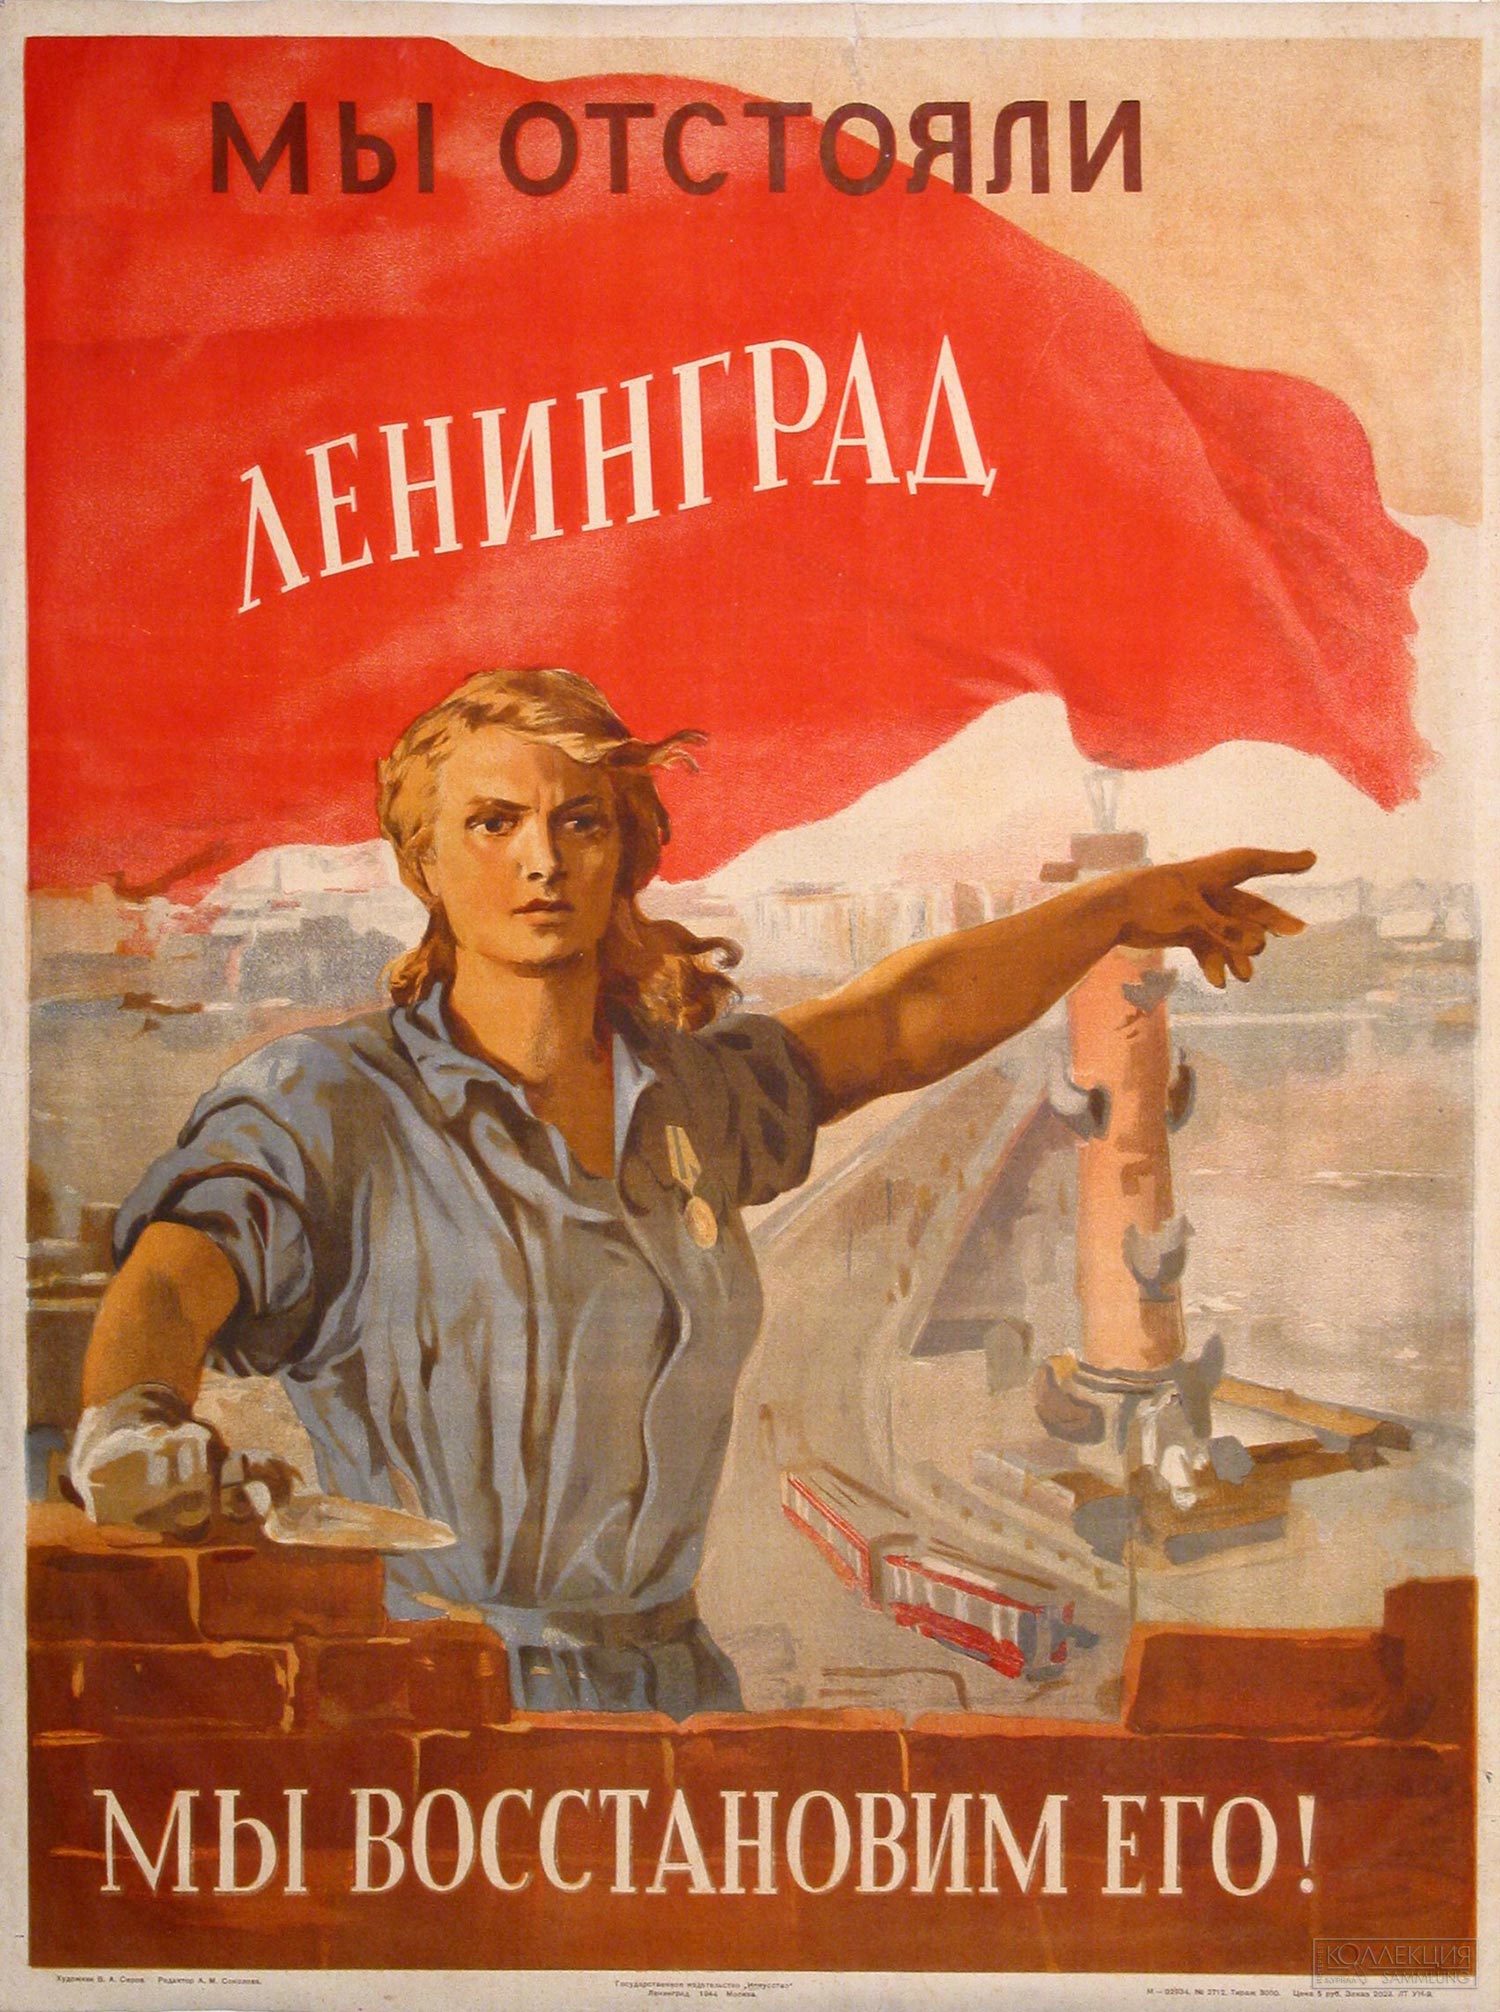 Плакат. Мы отстояли Ленинград - мы восстановим его!